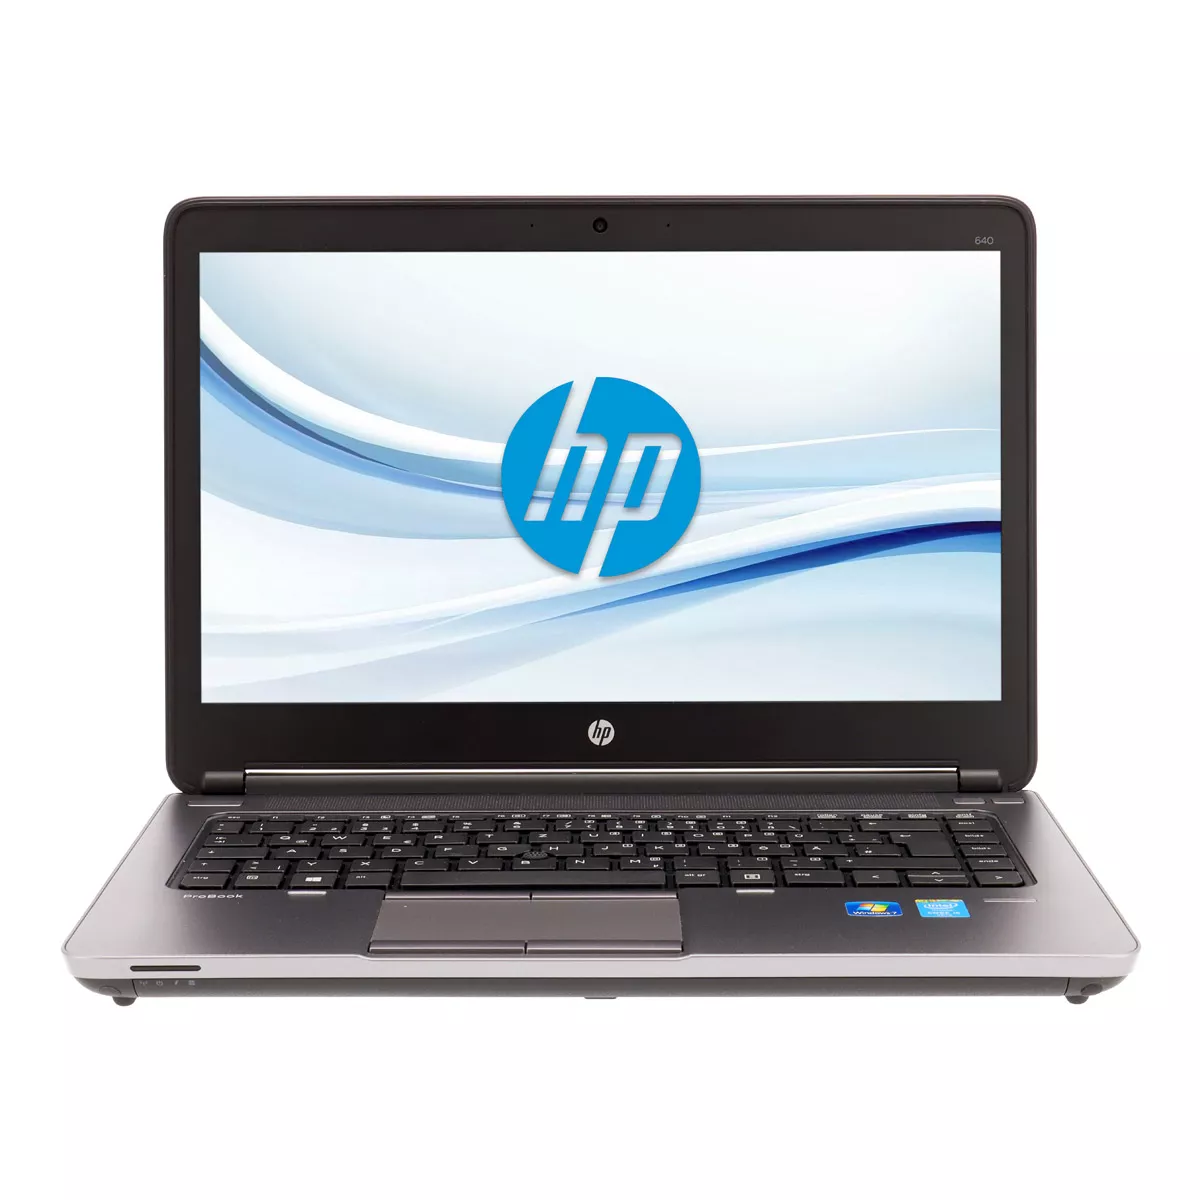 HP ProBook 640 G1 Core i5 4310M 8 GB 240 GB Webcam A+